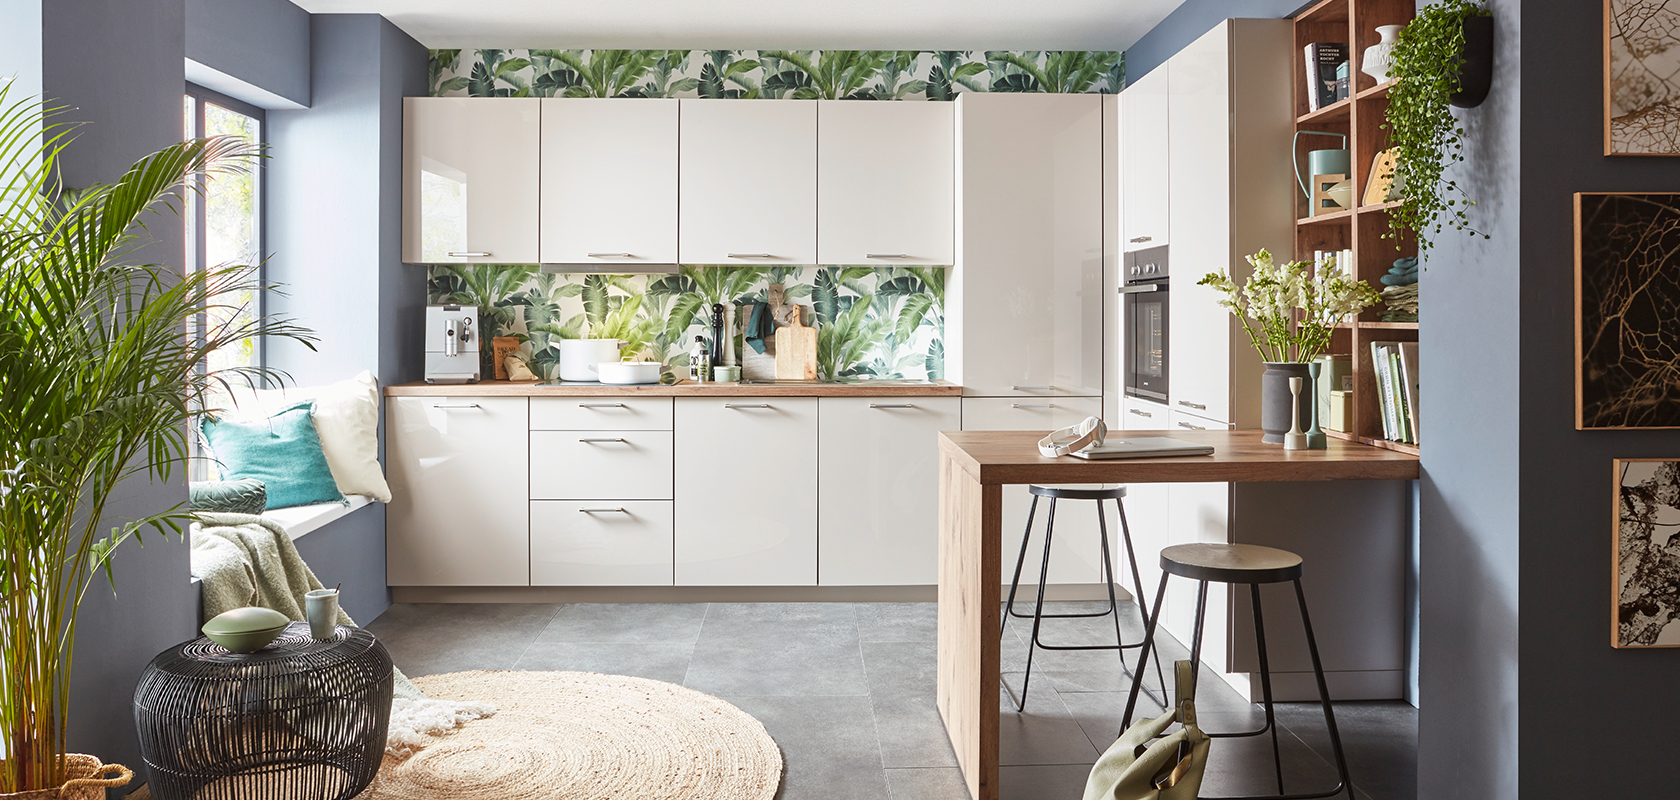 Nowoczesne wnętrze kuchni z białymi szafkami, tapetą w tropikalne wzory, drewnianym blatem, stylowymi stołkami barowymi i zielonymi akcentami roślin tworzące przytulną, nowoczesną przestrzeń.